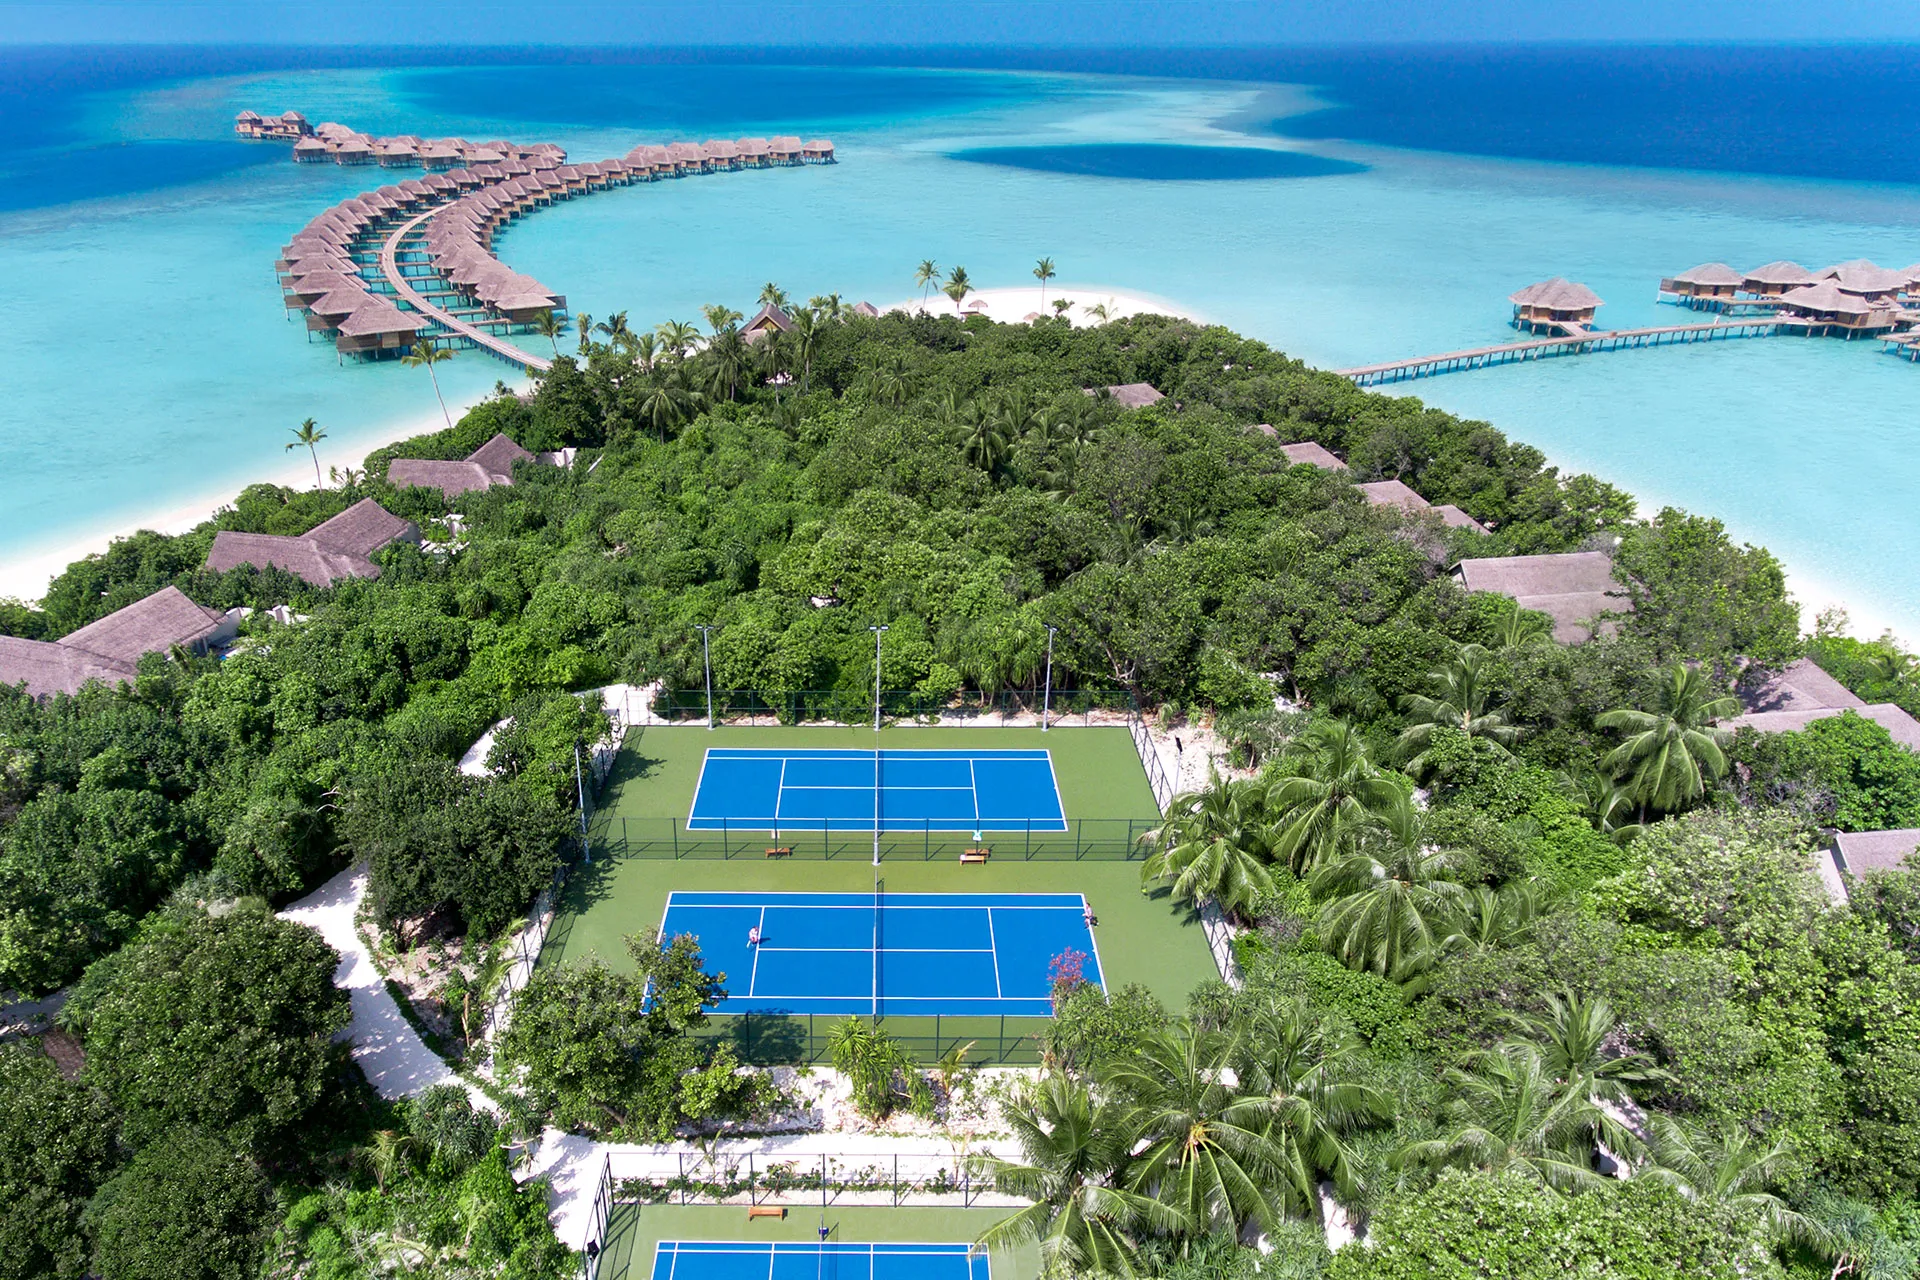 Tennisplätze auf maledivischer Insel